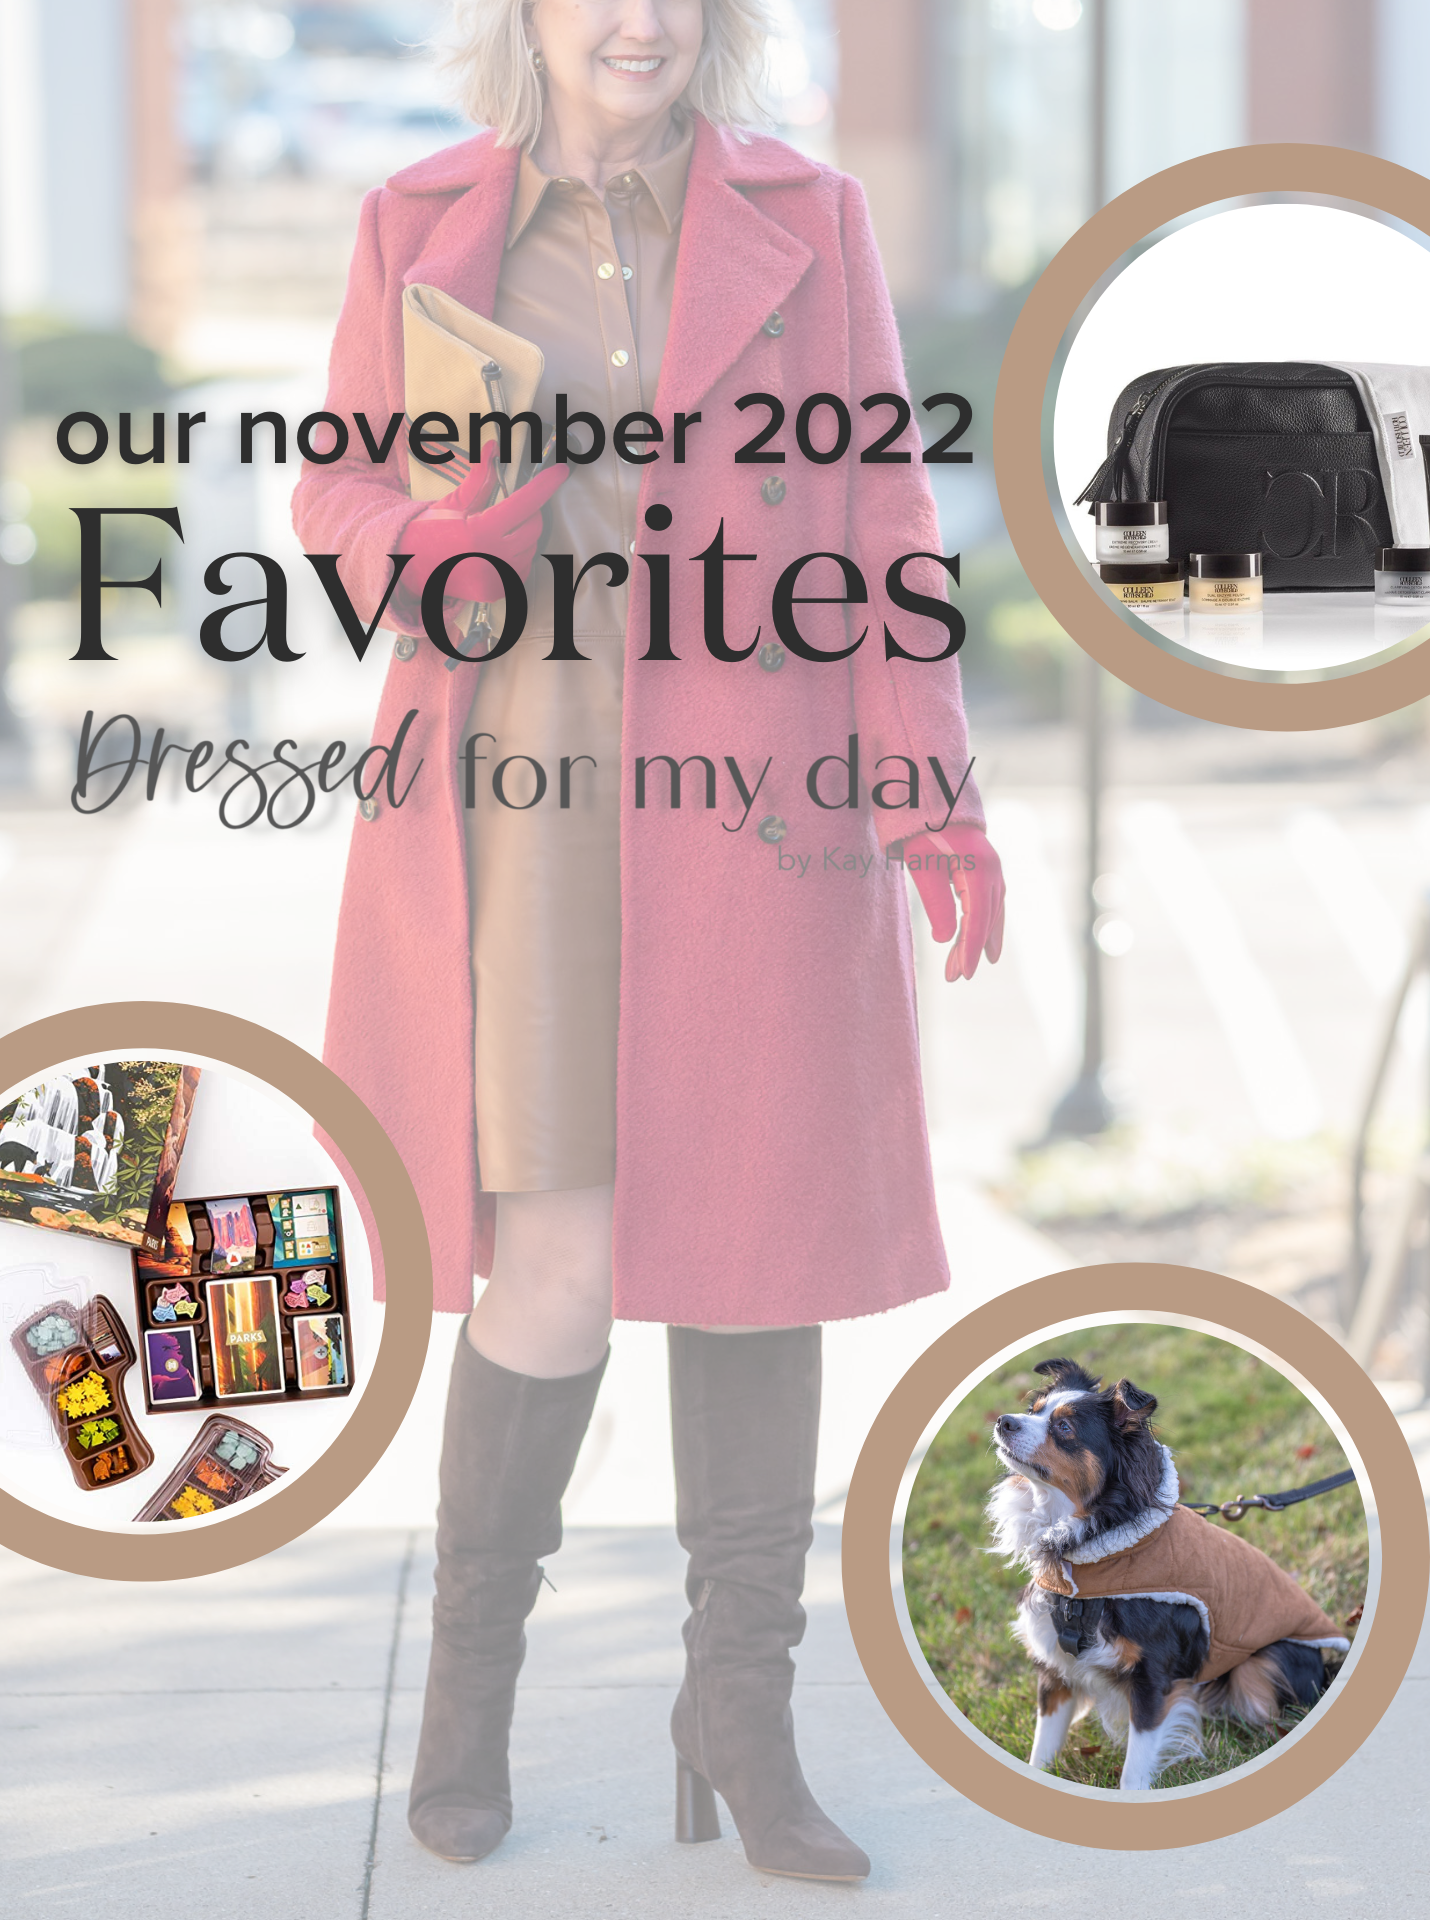 Our November 2022 Favorites